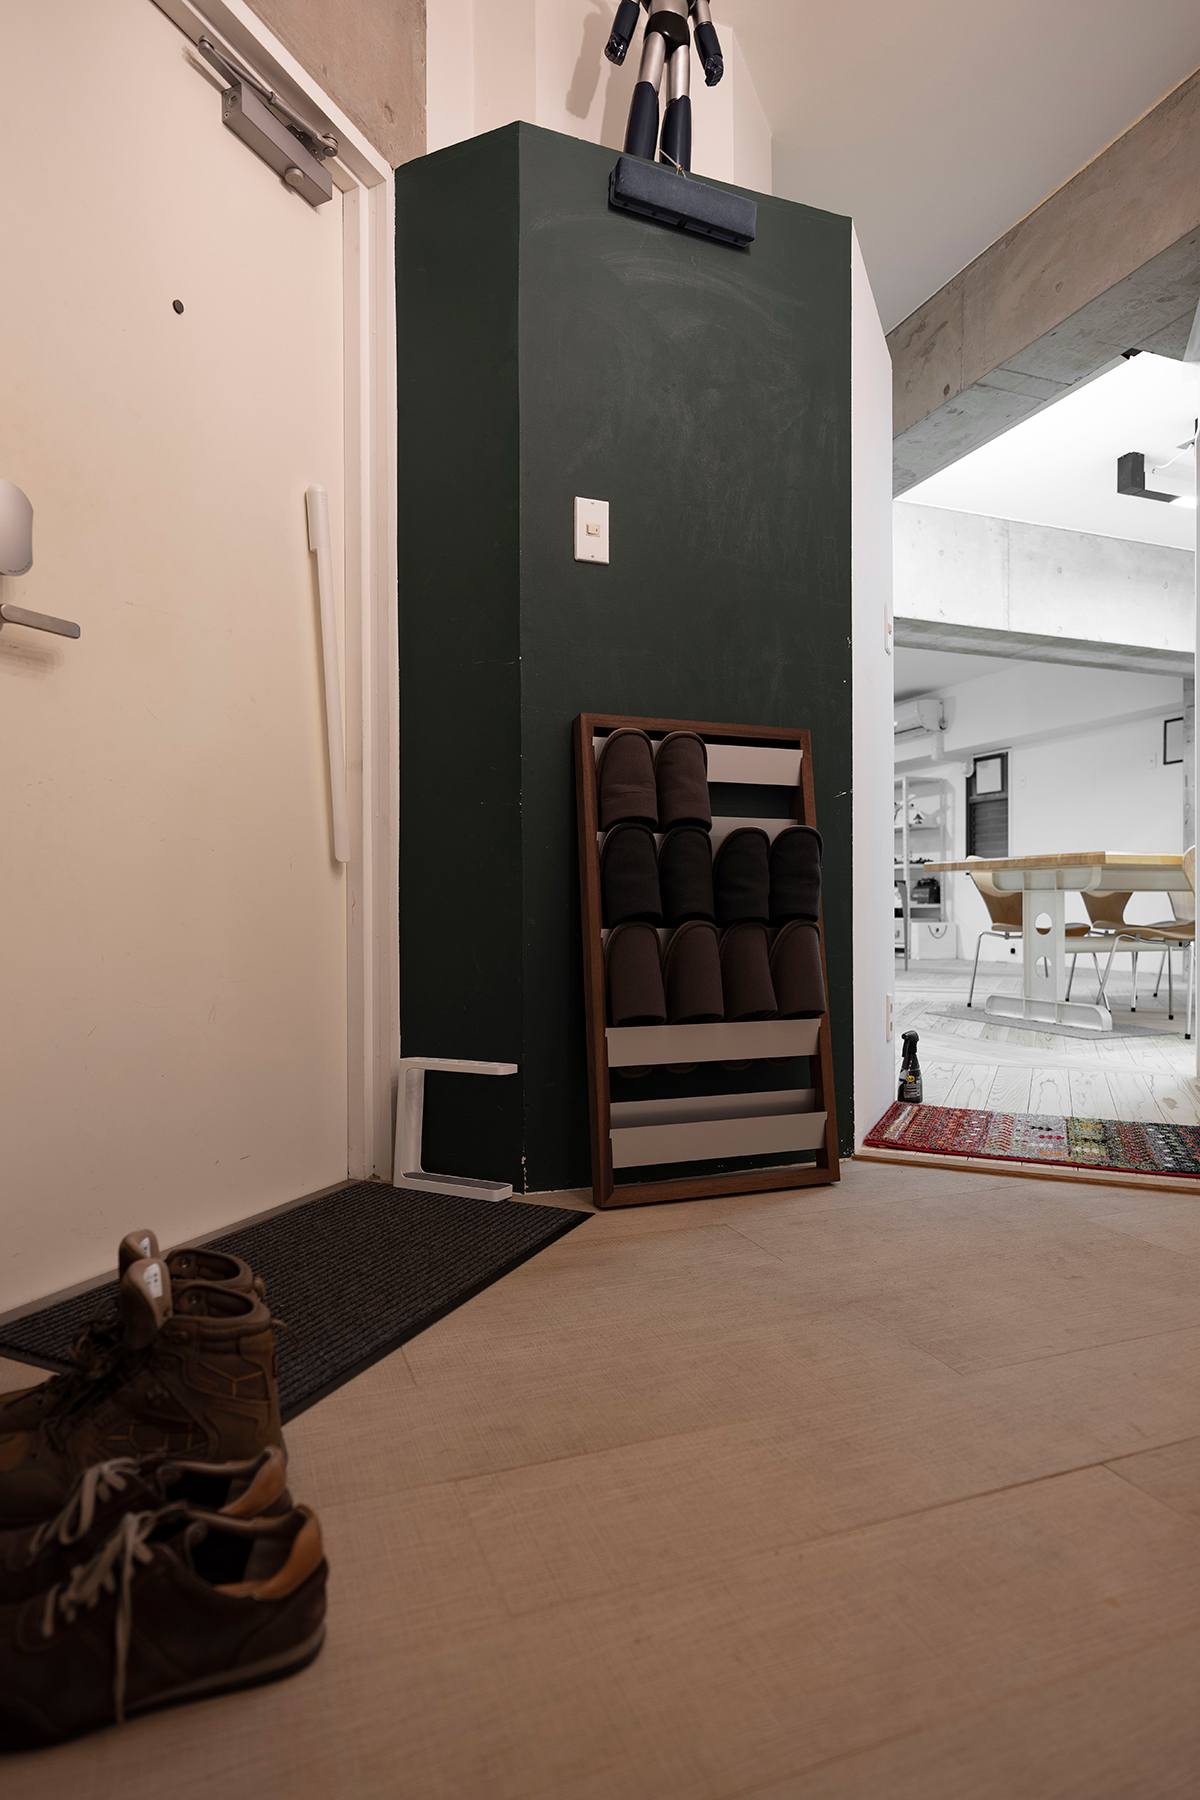 クリエイティブ×テクノロジーの新しいオフィスに | 壁一面の本棚 奥行250mm / Shelf (No.70) | マルゲリータ使用例 シンプル おしゃれ 部屋 インテリア レイアウト